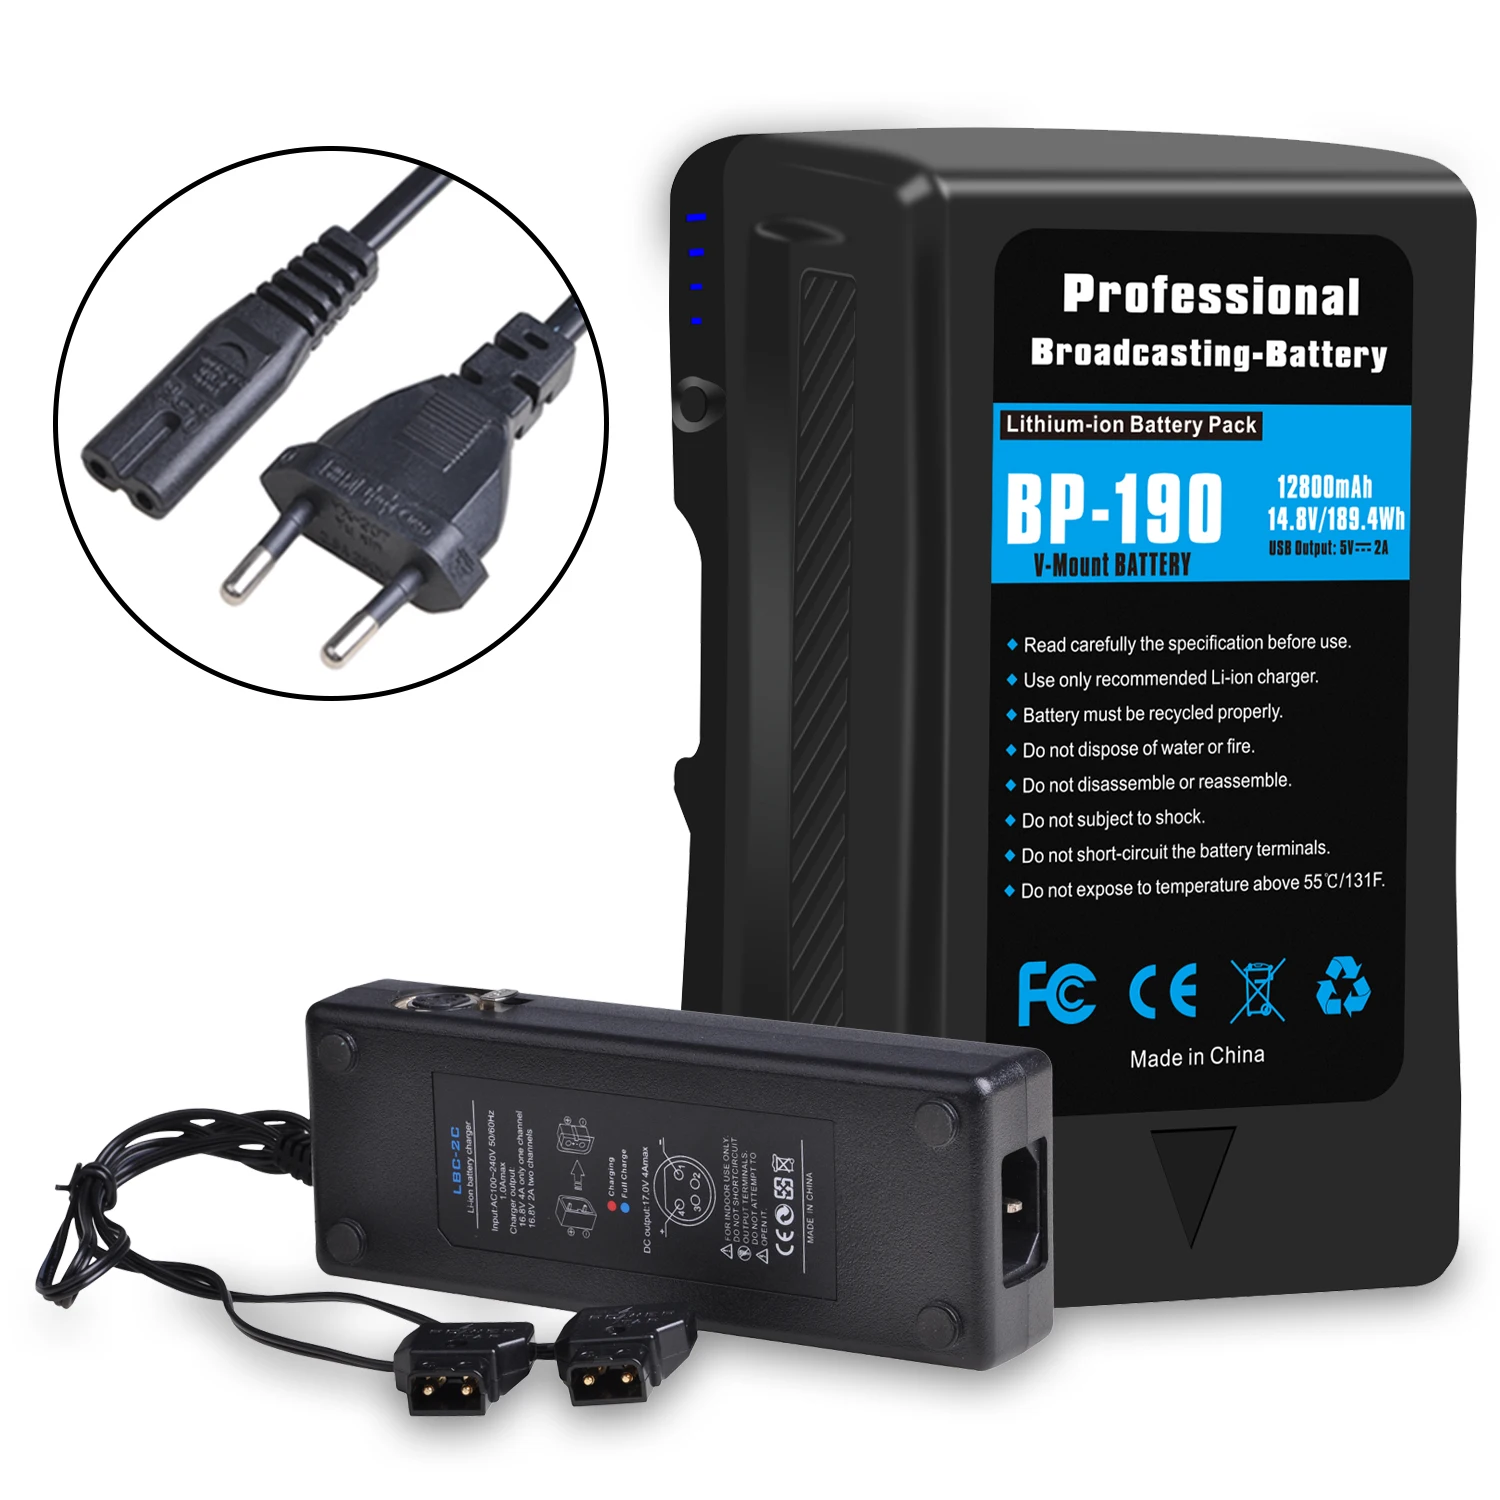 Batteria al litio 12800mAh BP-190V con caricabatterie D-Tap per videocamere Sony HDCAM e XDCAM e luci LED BL-BP150 168